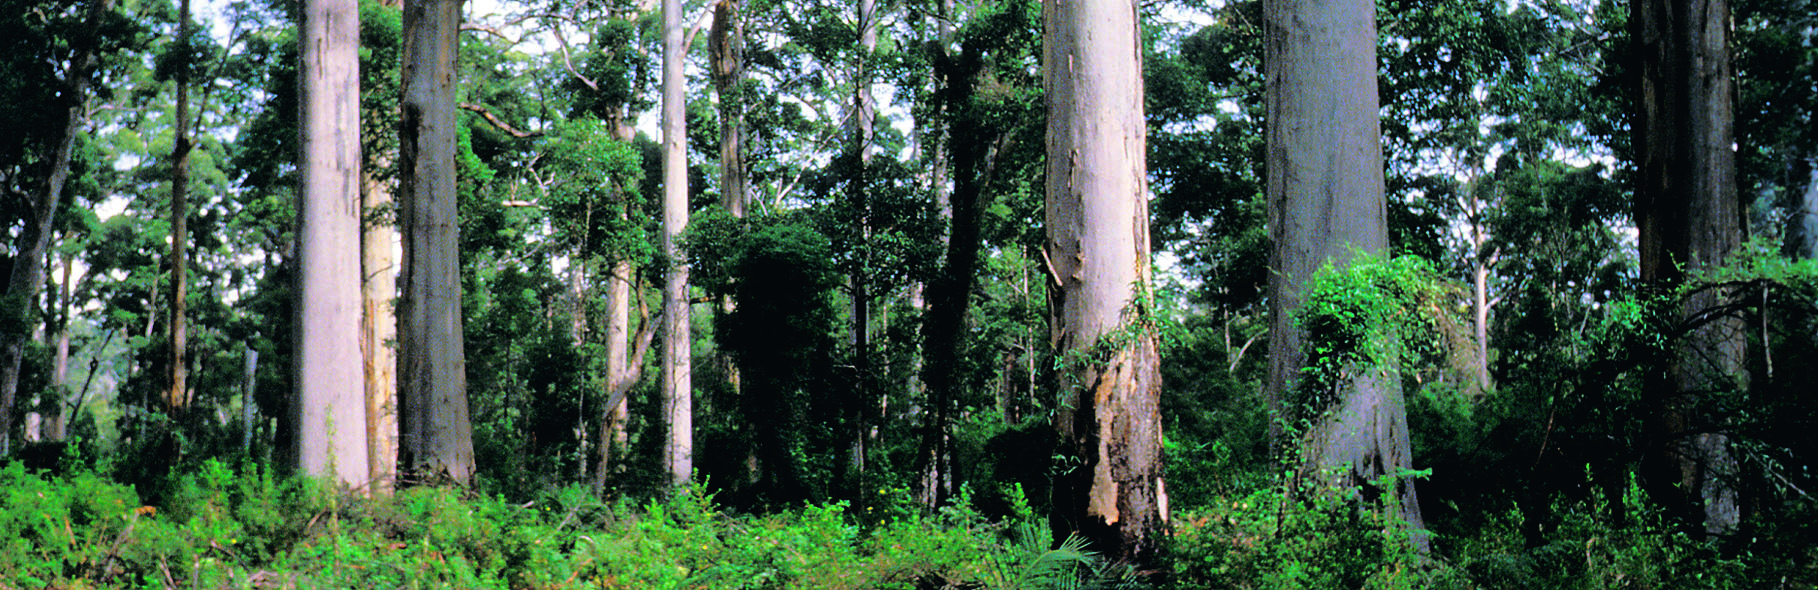 12 KANSAINVÄLISIÄ METSÄTILASTOJA Maapallolla on metsää 3,9 miljardia hehtaaria eli noin 0,7 hehtaaria asukasta kohden. Puuta metsissä kasvaa yhteensä 386 miljardia kiintokuutiometriä.